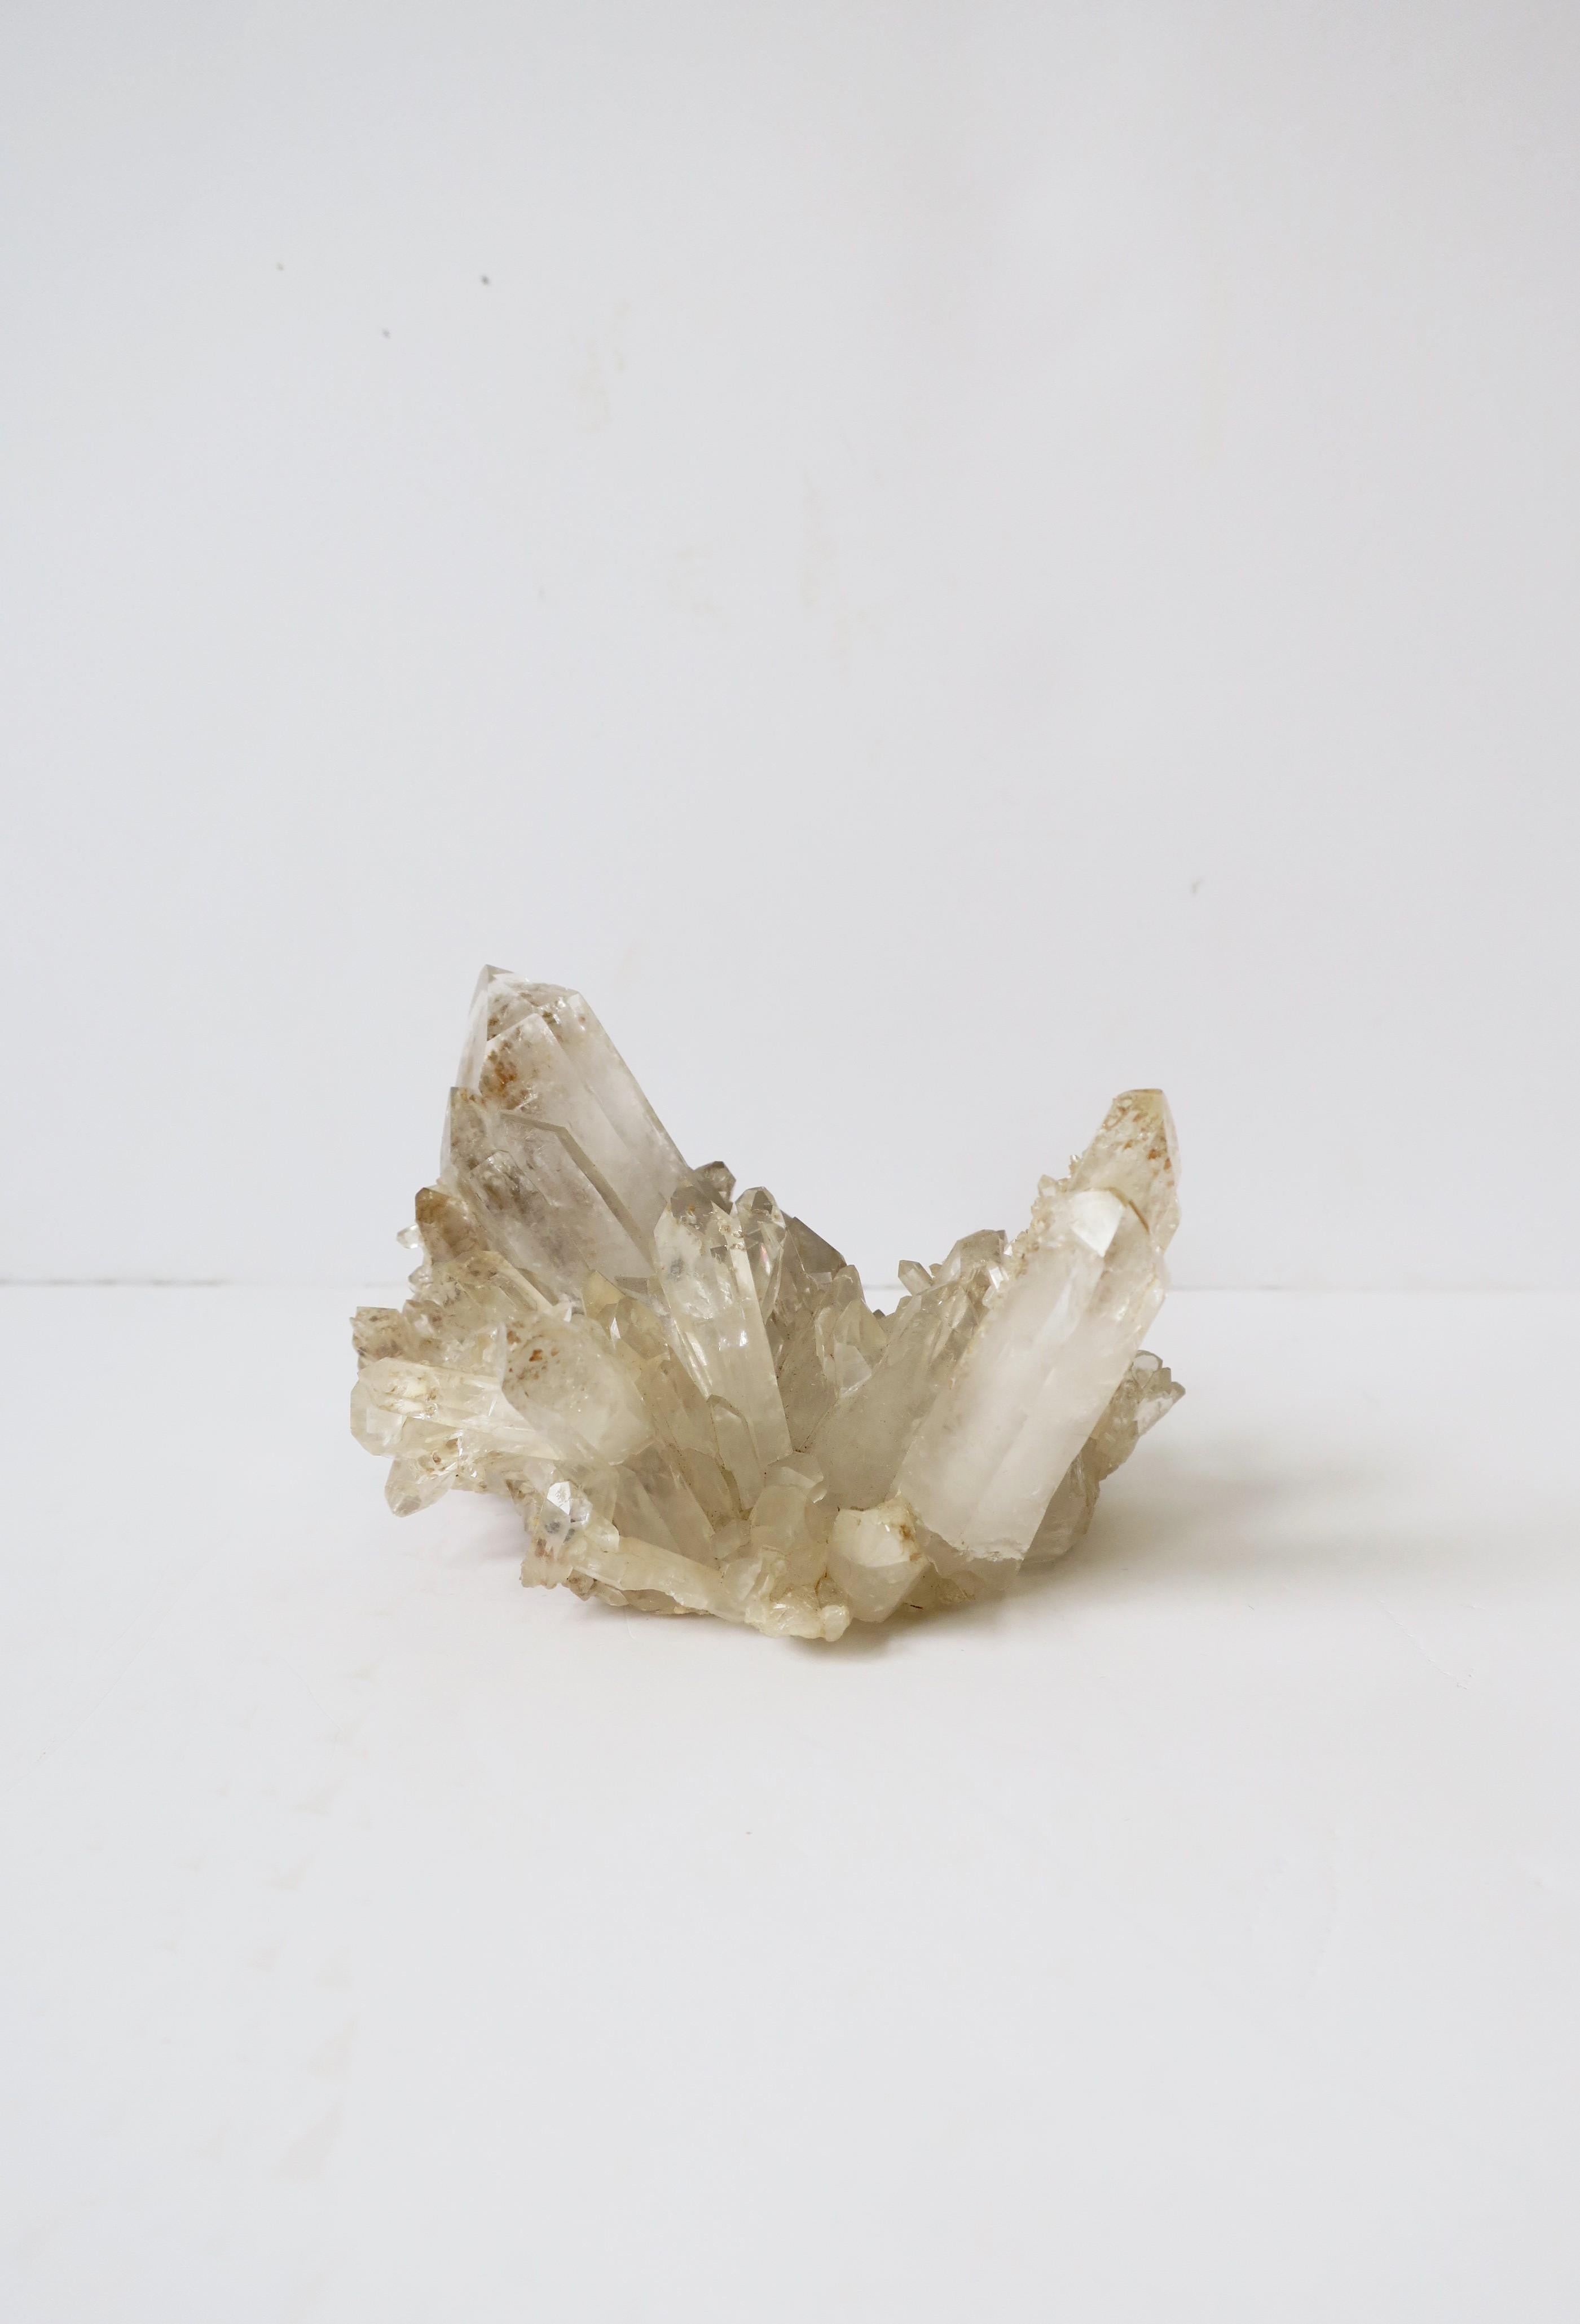 Ein natürlicher Bergkristall, auch bekannt als klarer Quarz, ist ein dekoratives Objekt. 

Abmessungen: 3,5